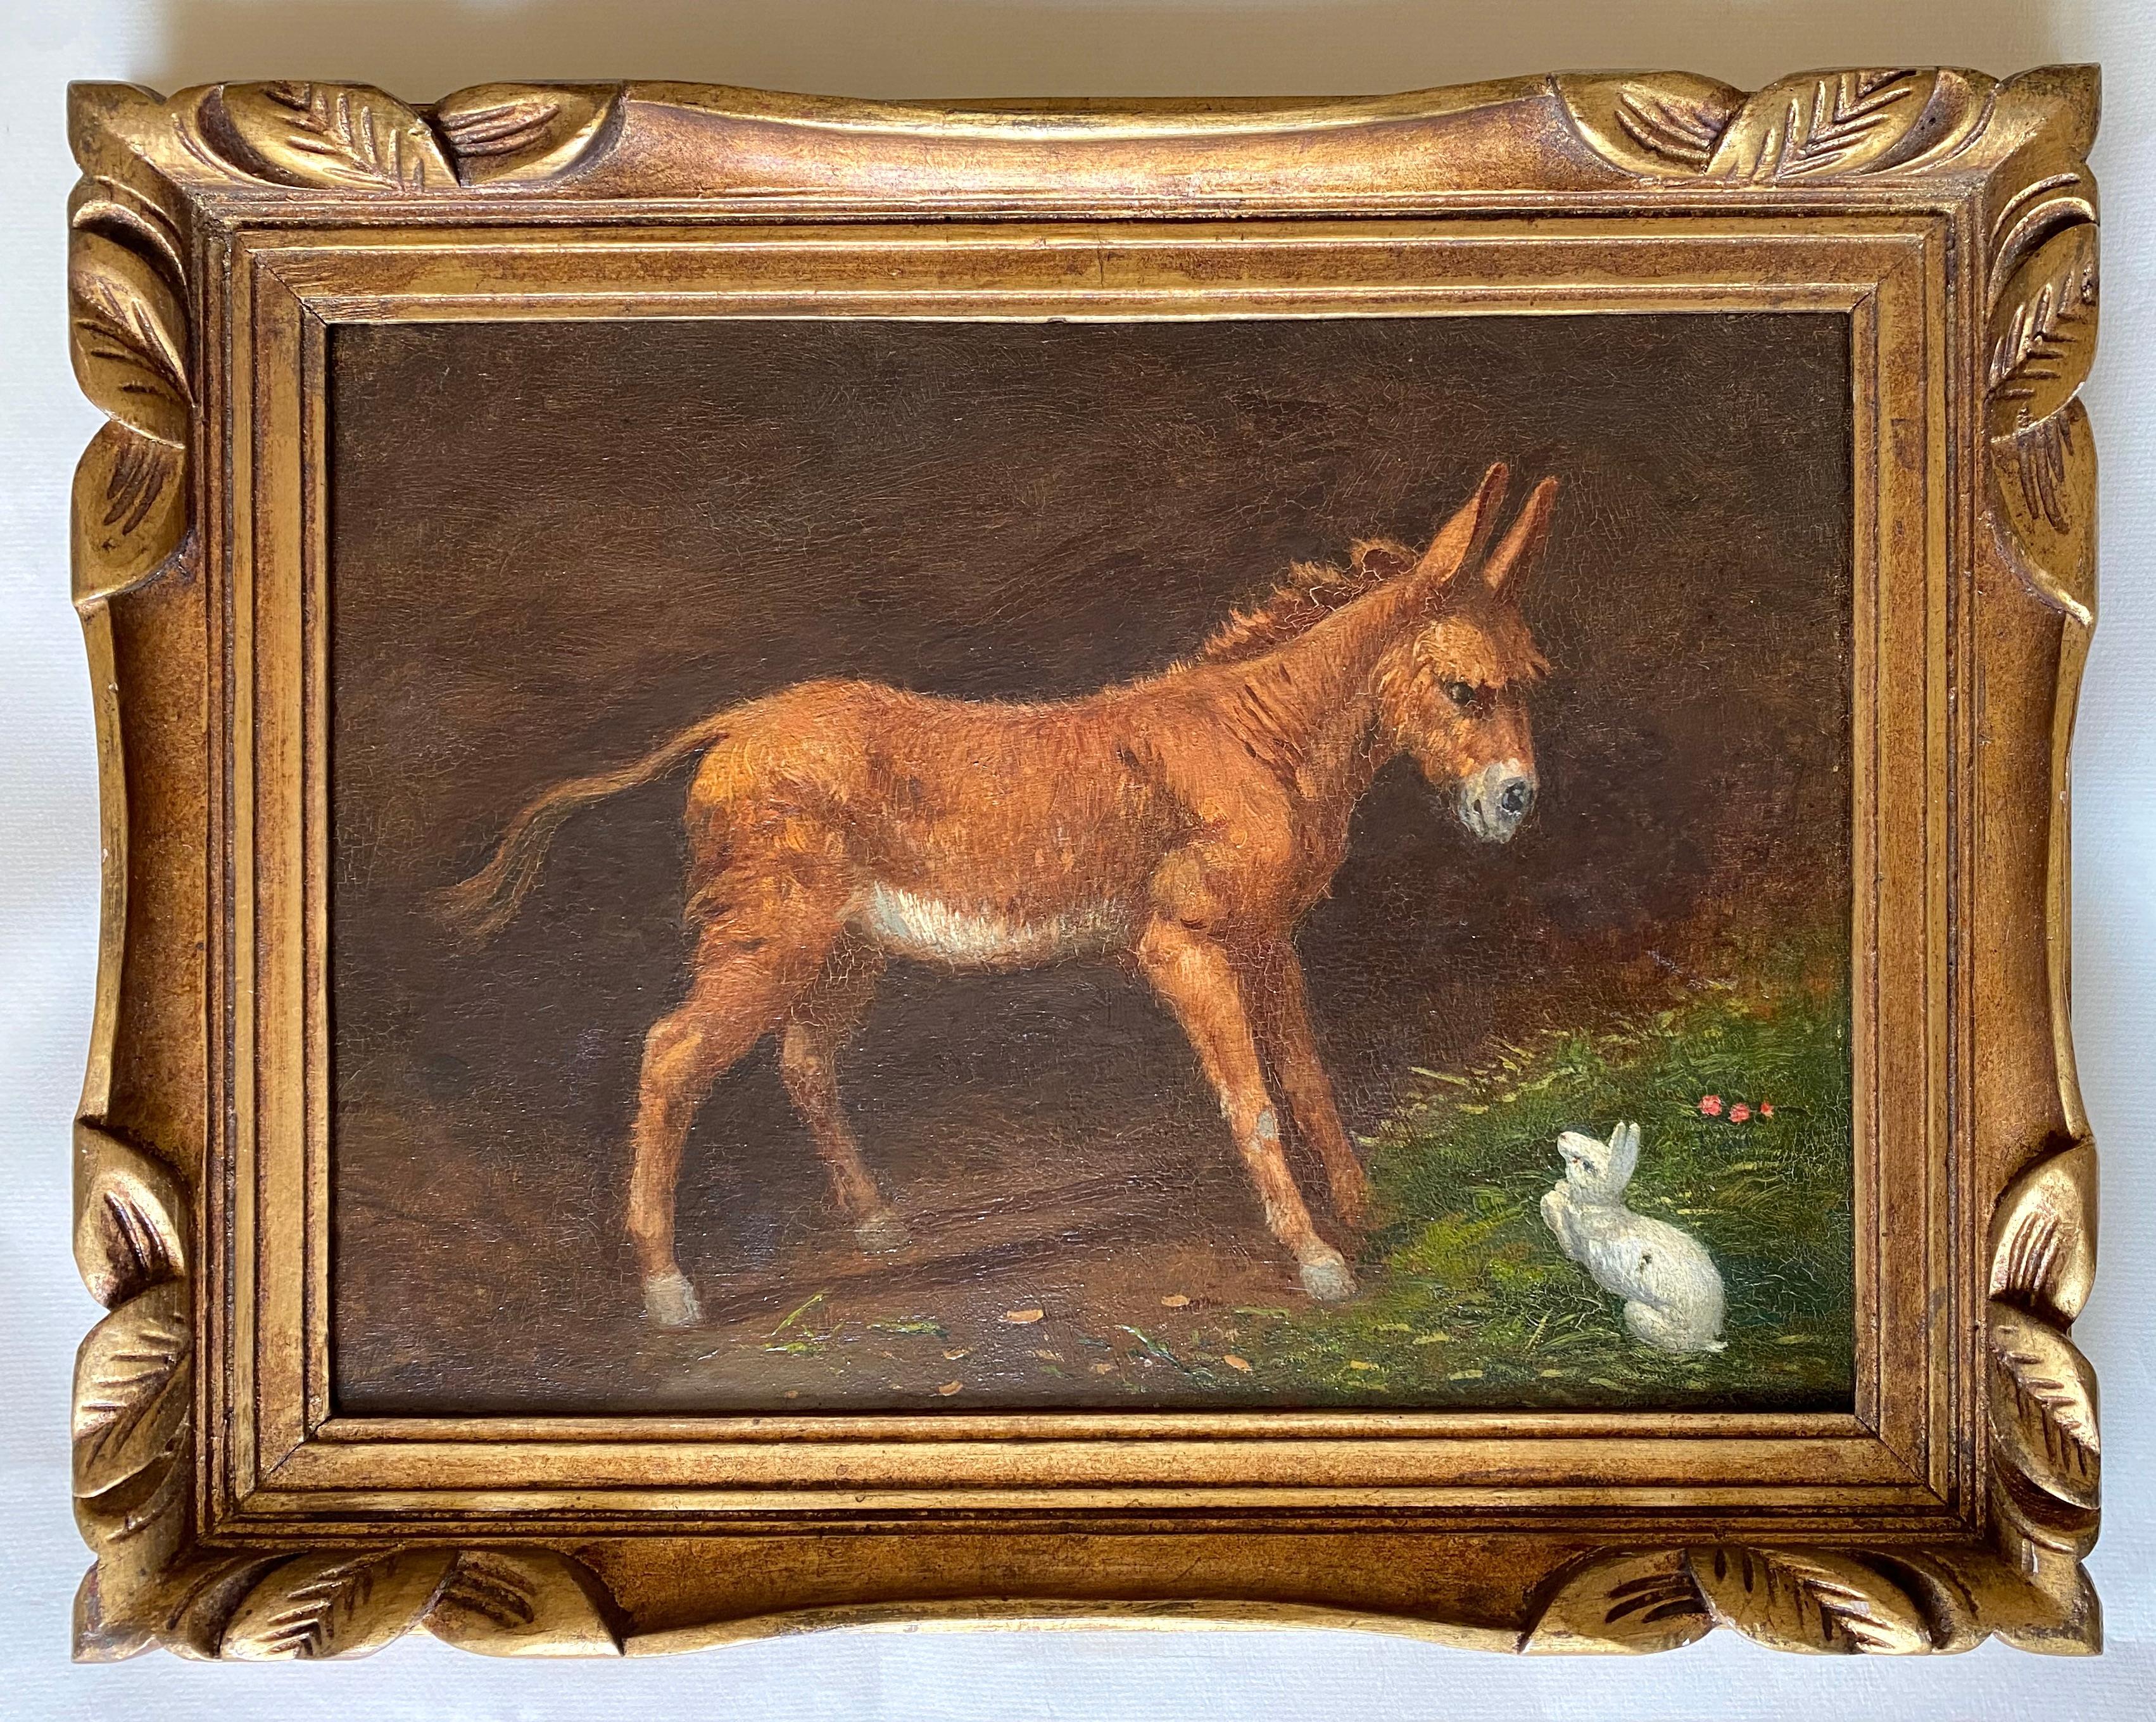 Petite mule et lapin blanc : peinture animalière équestre des années 1890 Novecento - Painting de Gaetano Jerace